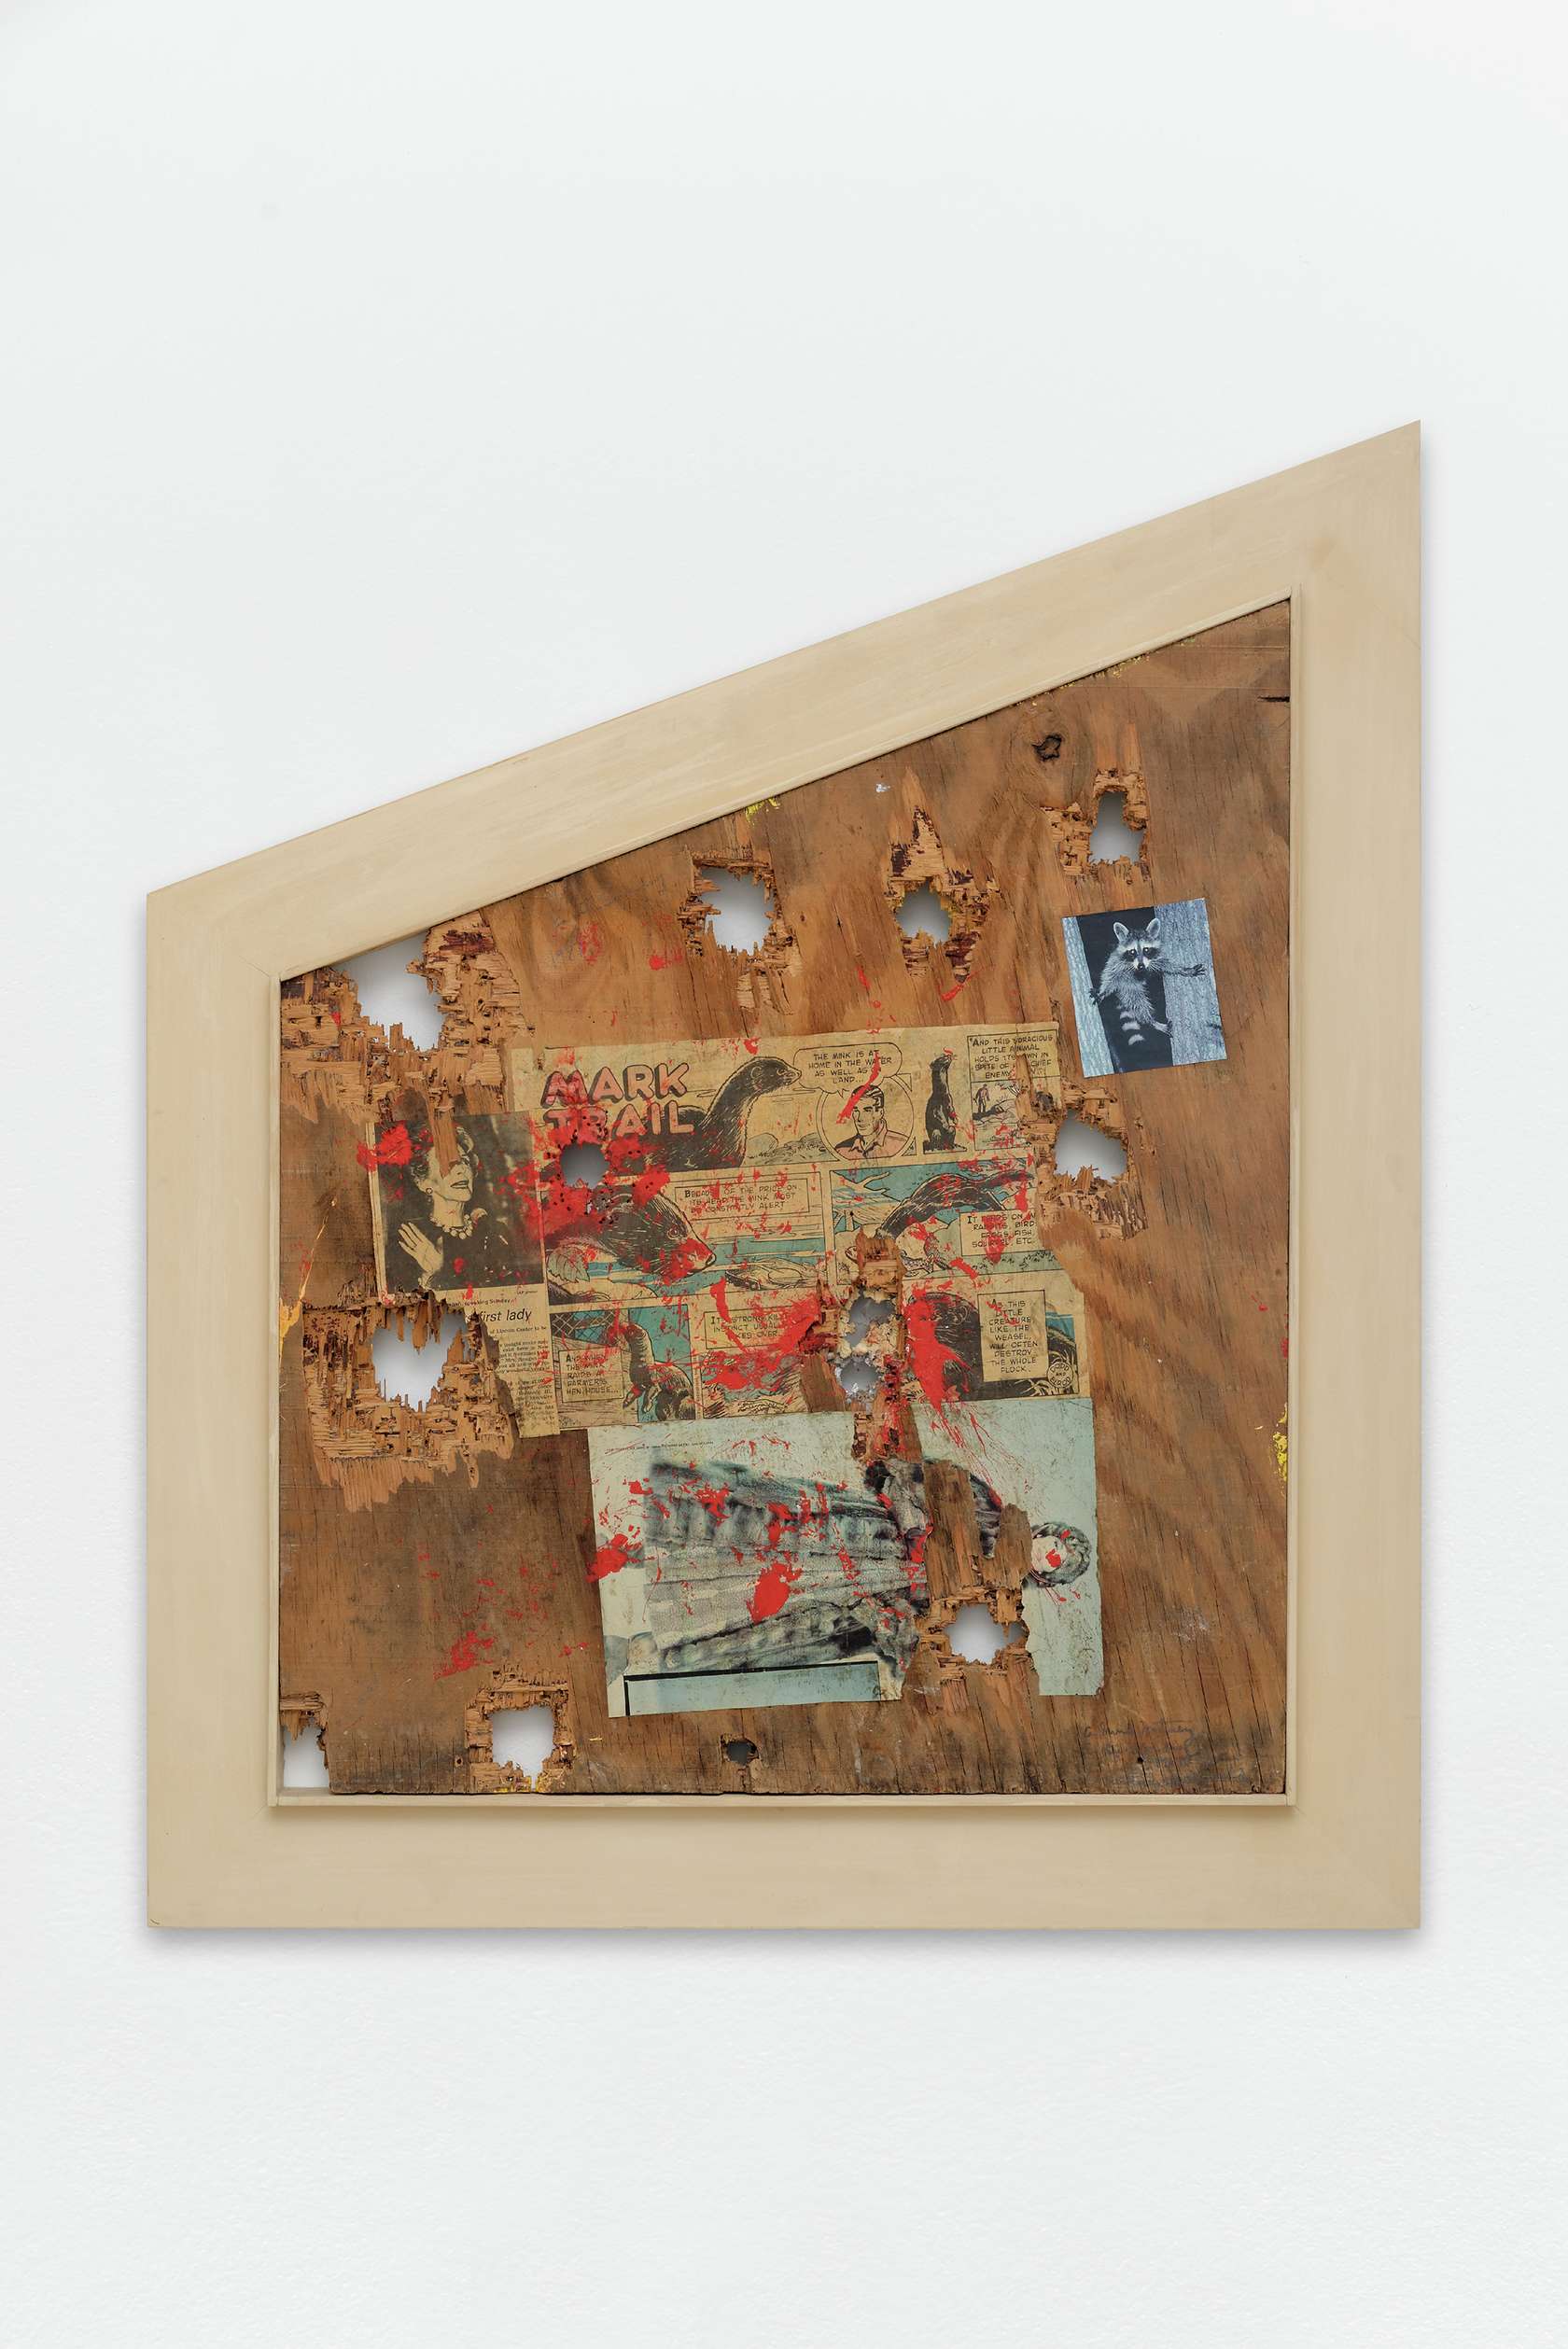 William S. Burroughs, Mink Mutiny, 1987 Acrylique, collages et impacts de balles sur panneau de contreplaqué75 × 64 cm / 29 1/2 × 25 2/8 in.